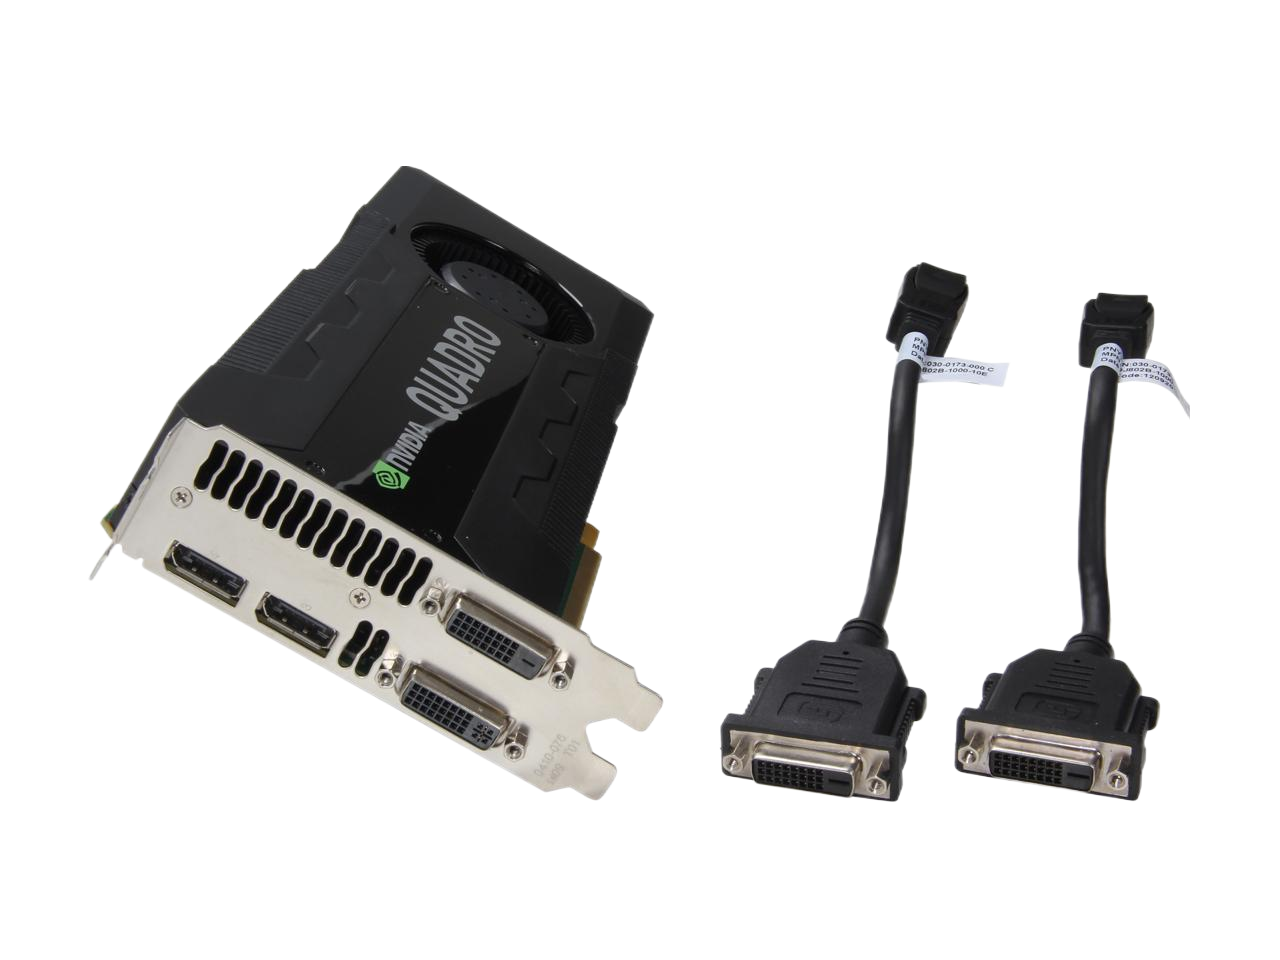 NVIDIA Quadro K5000 for Mac 4GB 256-bit GDDR5 PCI Express 2.0 x16 SLI Supported Workstation Video Card VCQK5000MAC-PB